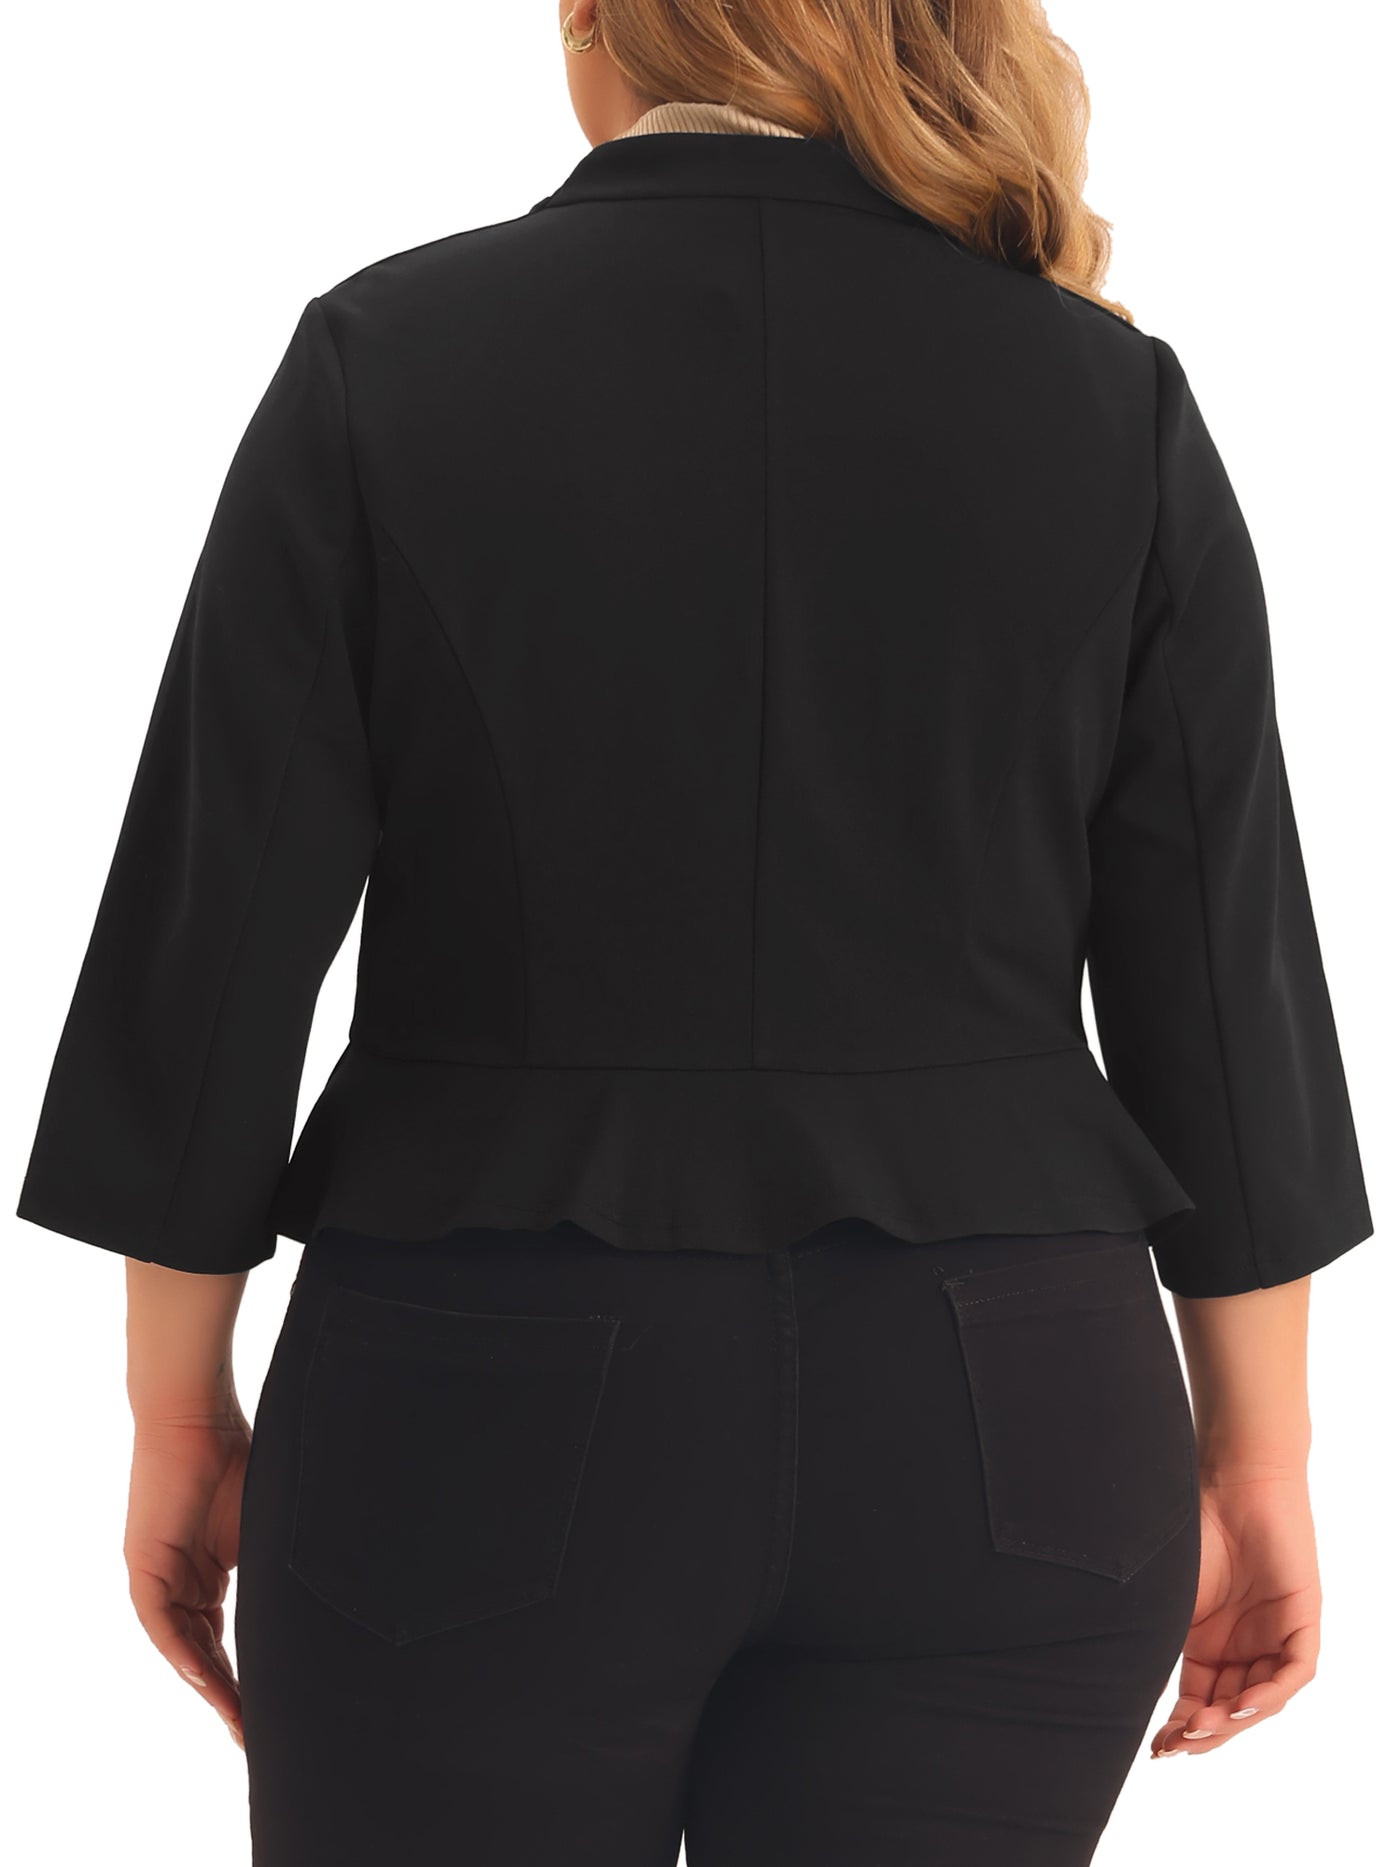 Bublédon Plus Size Blazers for Women Open Front 3/4 Sleeve Ruffled Hem Work Jackets Blazer